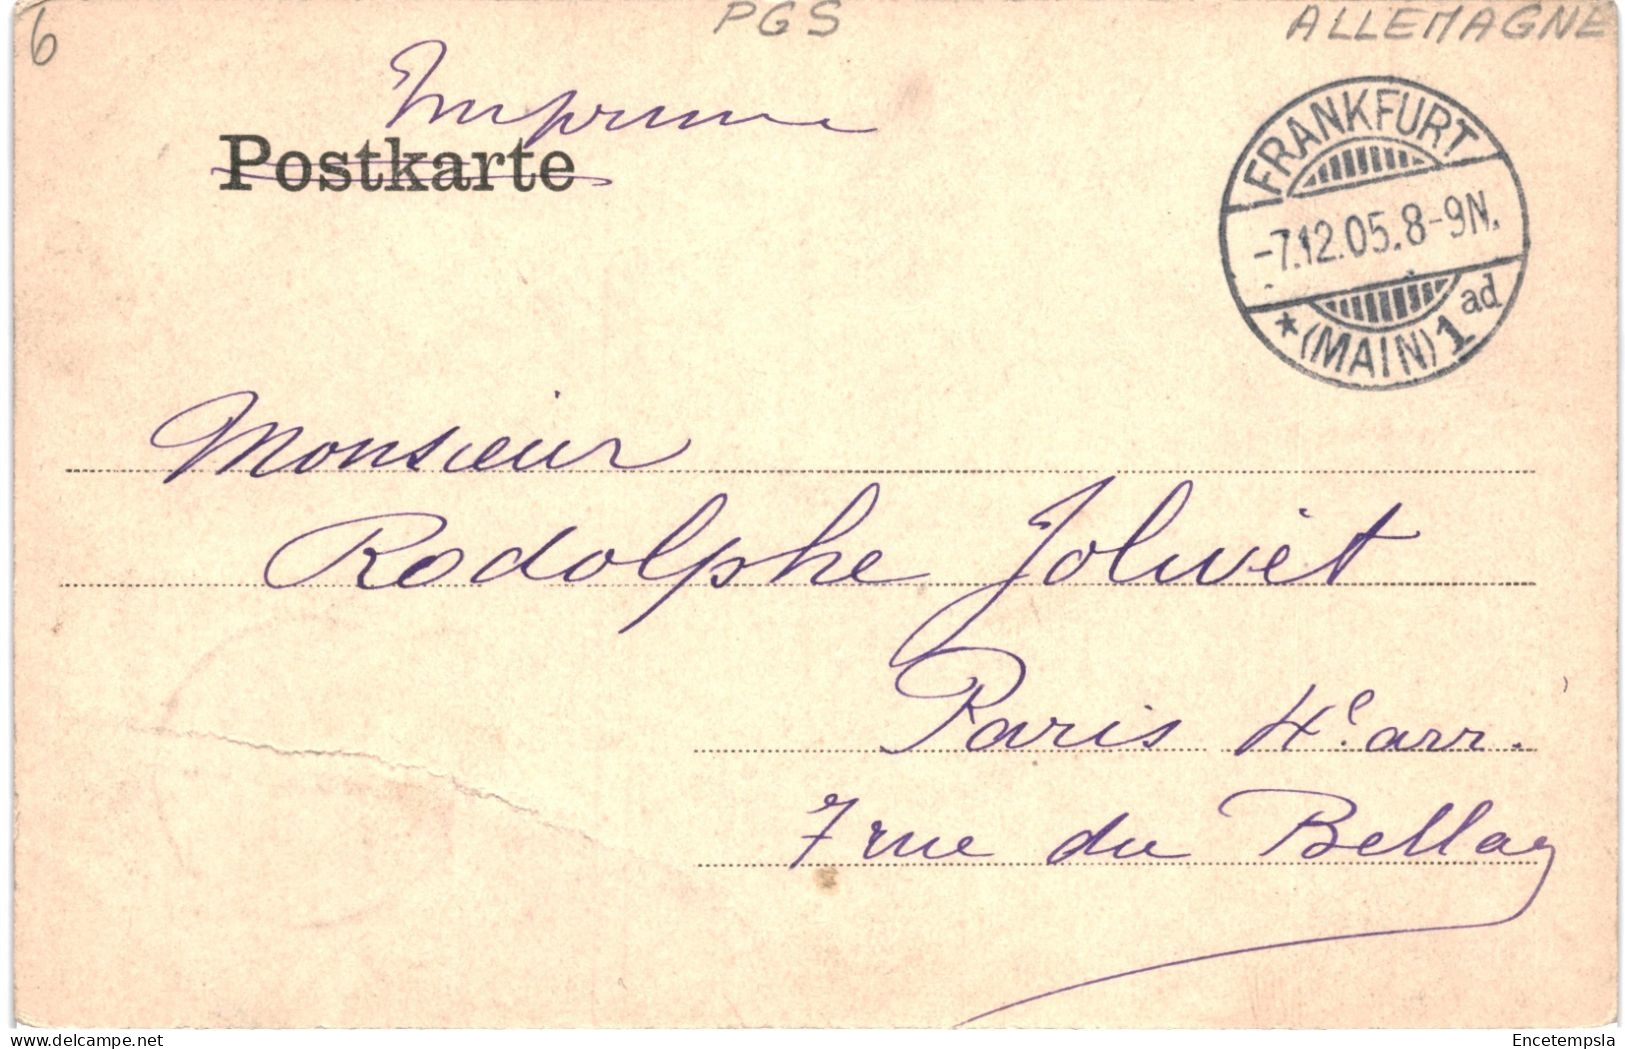 CPA Carte Postale  Germany  Frankfurt  Die Besten Grüsse  Multi Vues 1905 VM80803 - Frankfurt A. Main